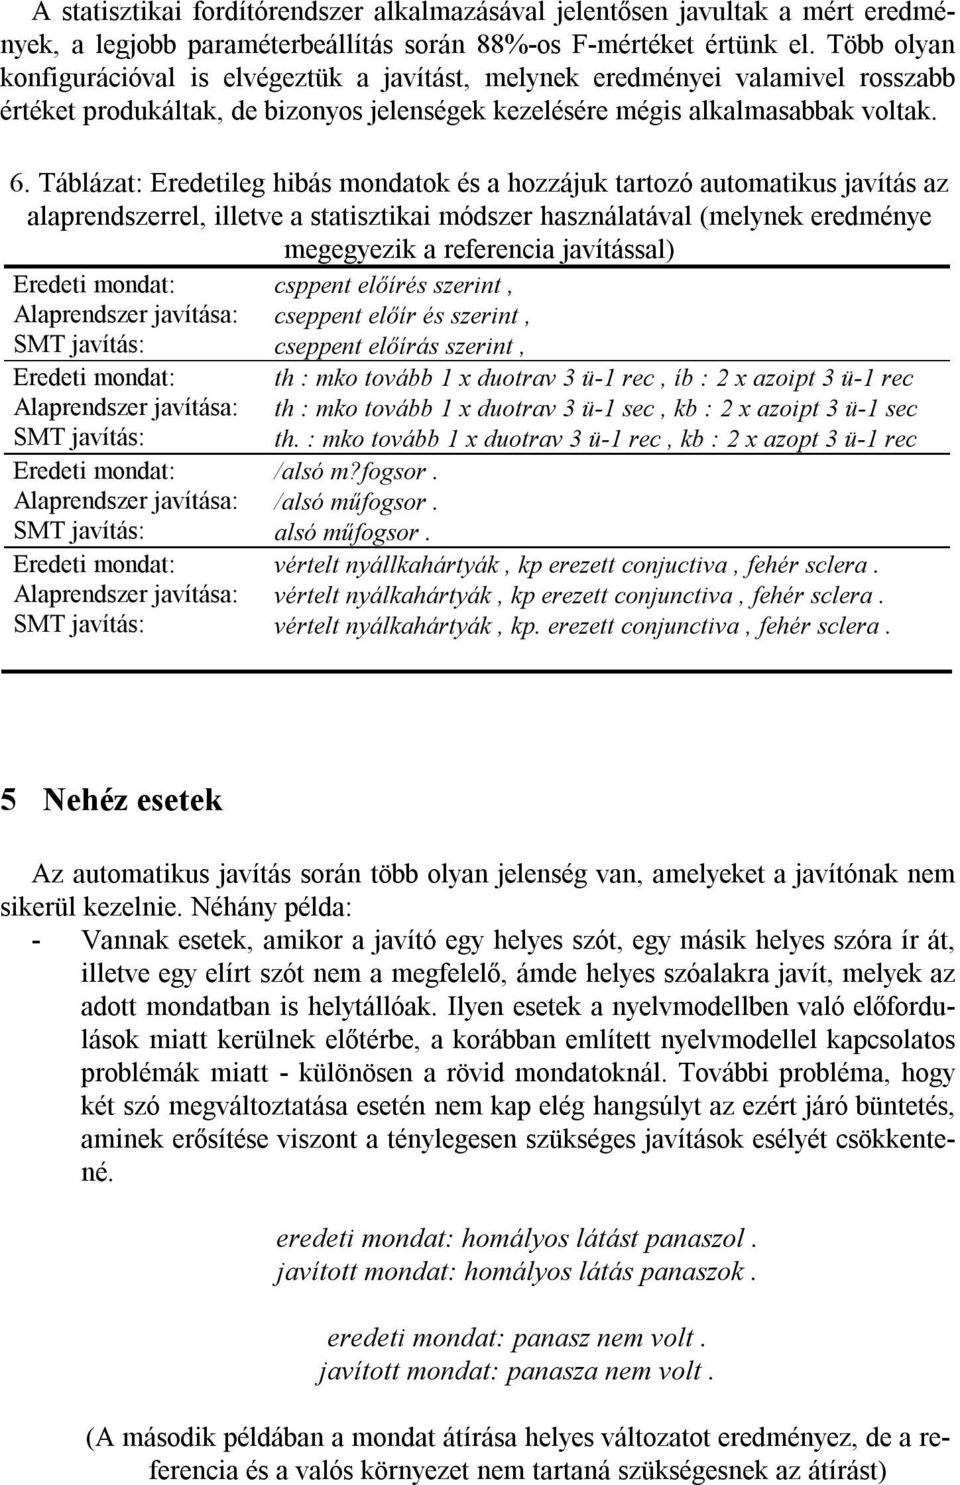 Helyesírási hibák automatikus javítása orvosi szövegekben a szövegkörnyezet  figyelembevételével - PDF Free Download